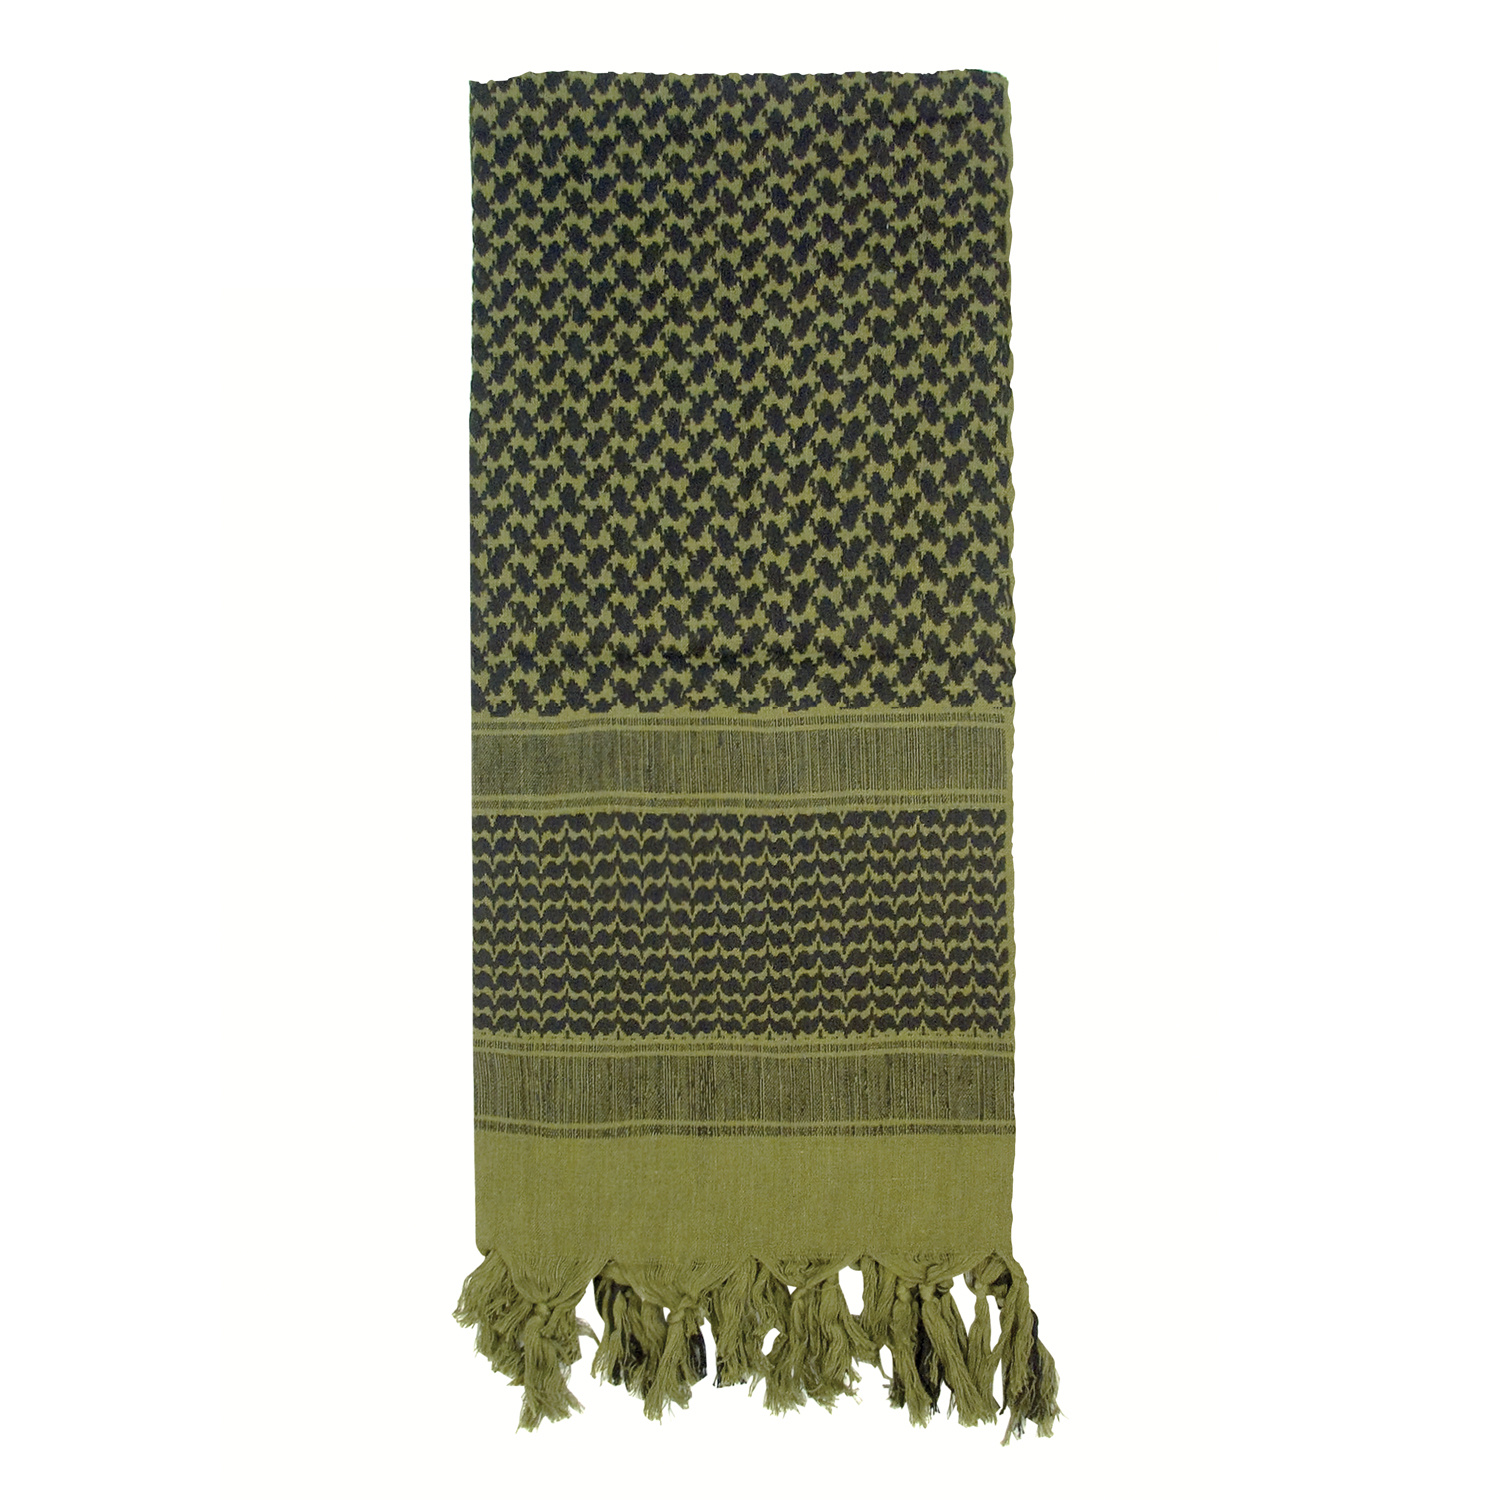 šátek Shemagh odlehčený zelený